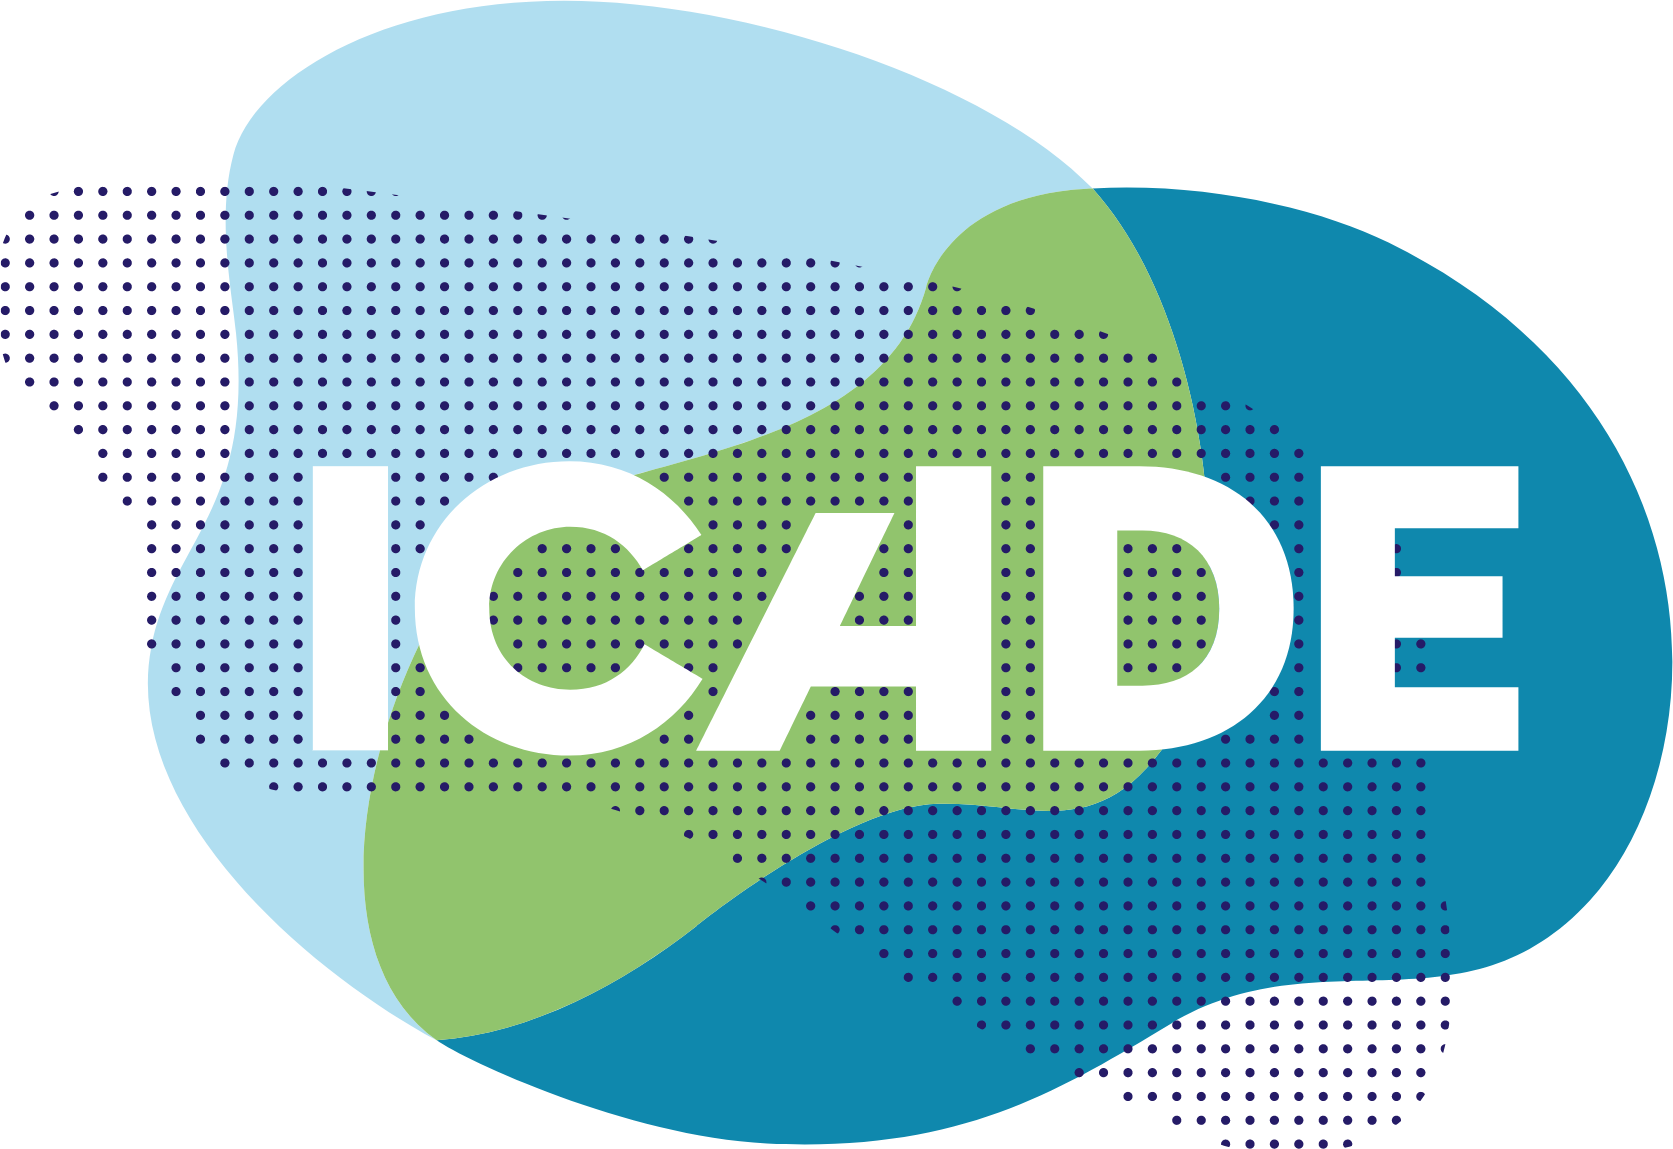 Icade logo (transparent PNG)